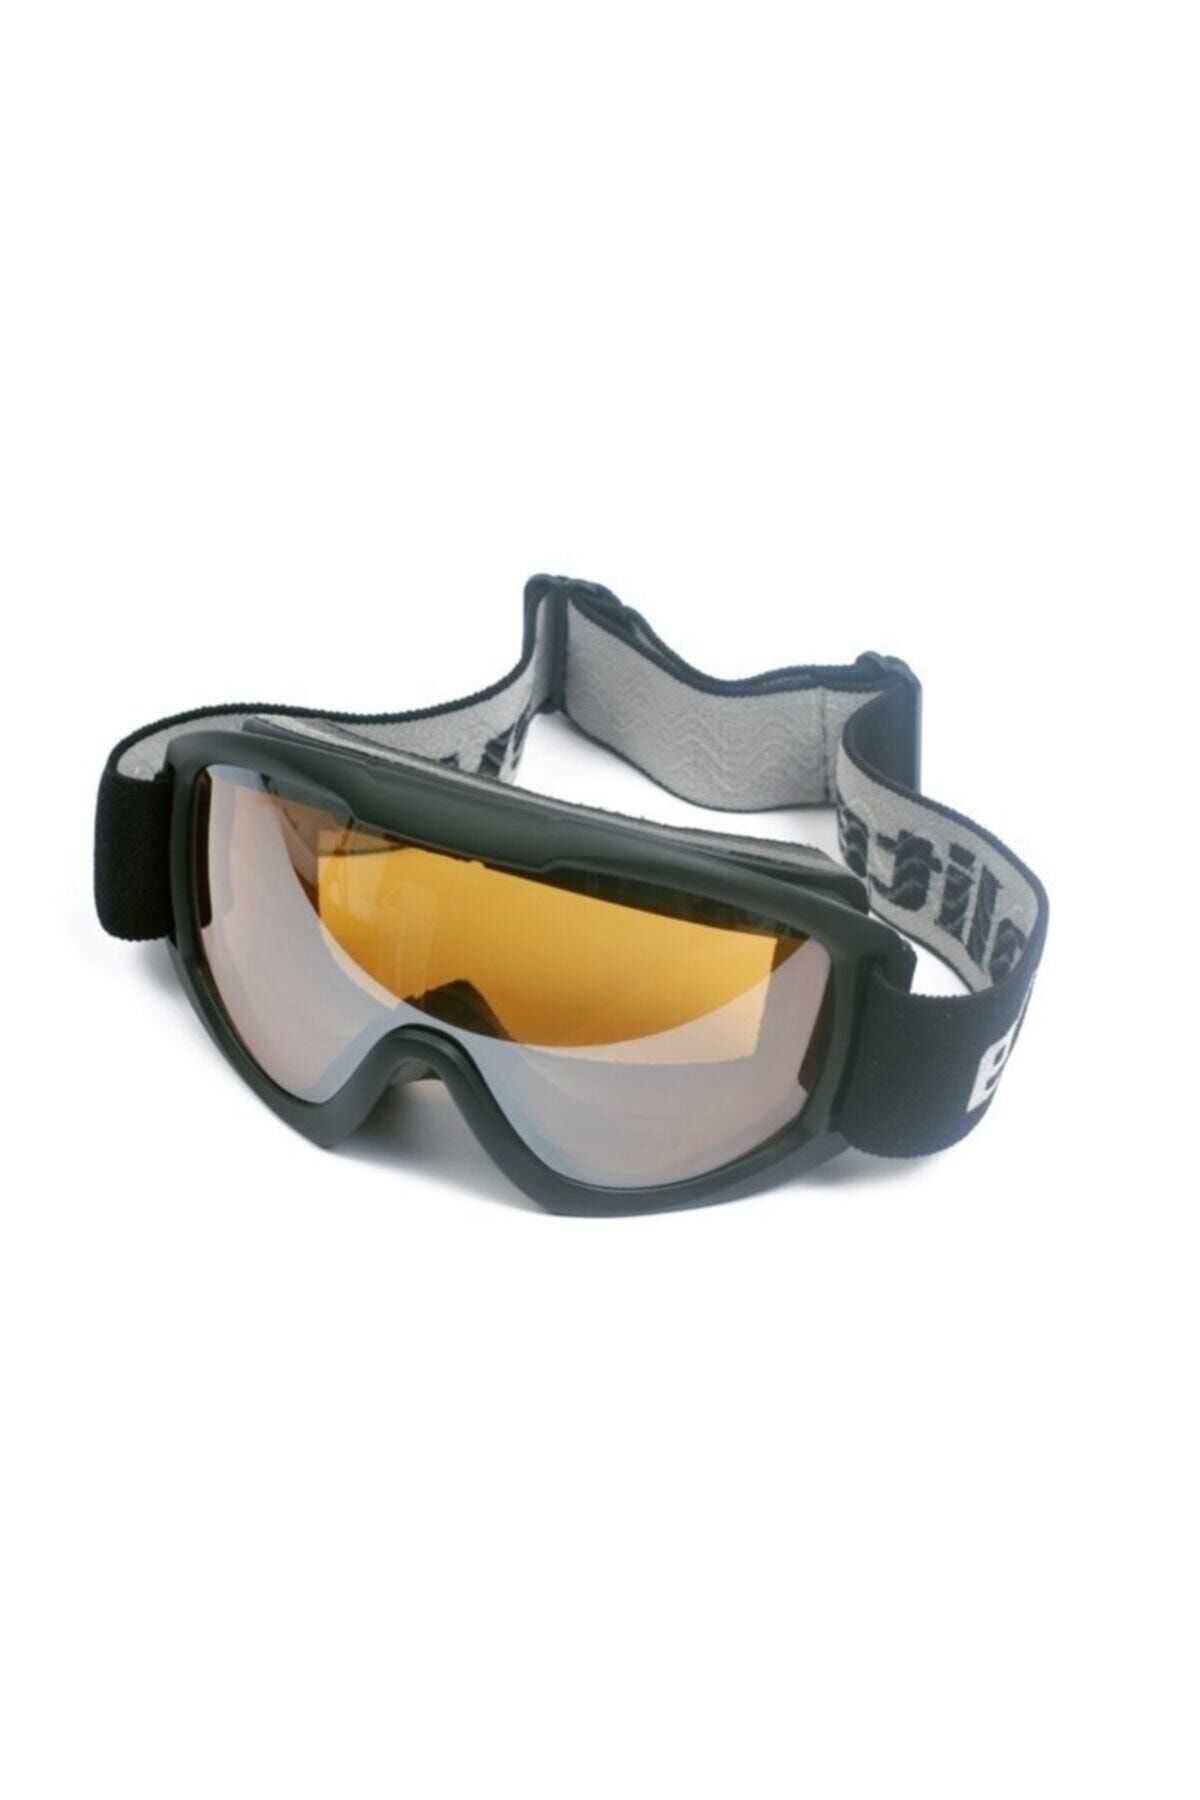 Genel Markalar Evolite Peak – Sp194-b Ski Goggles